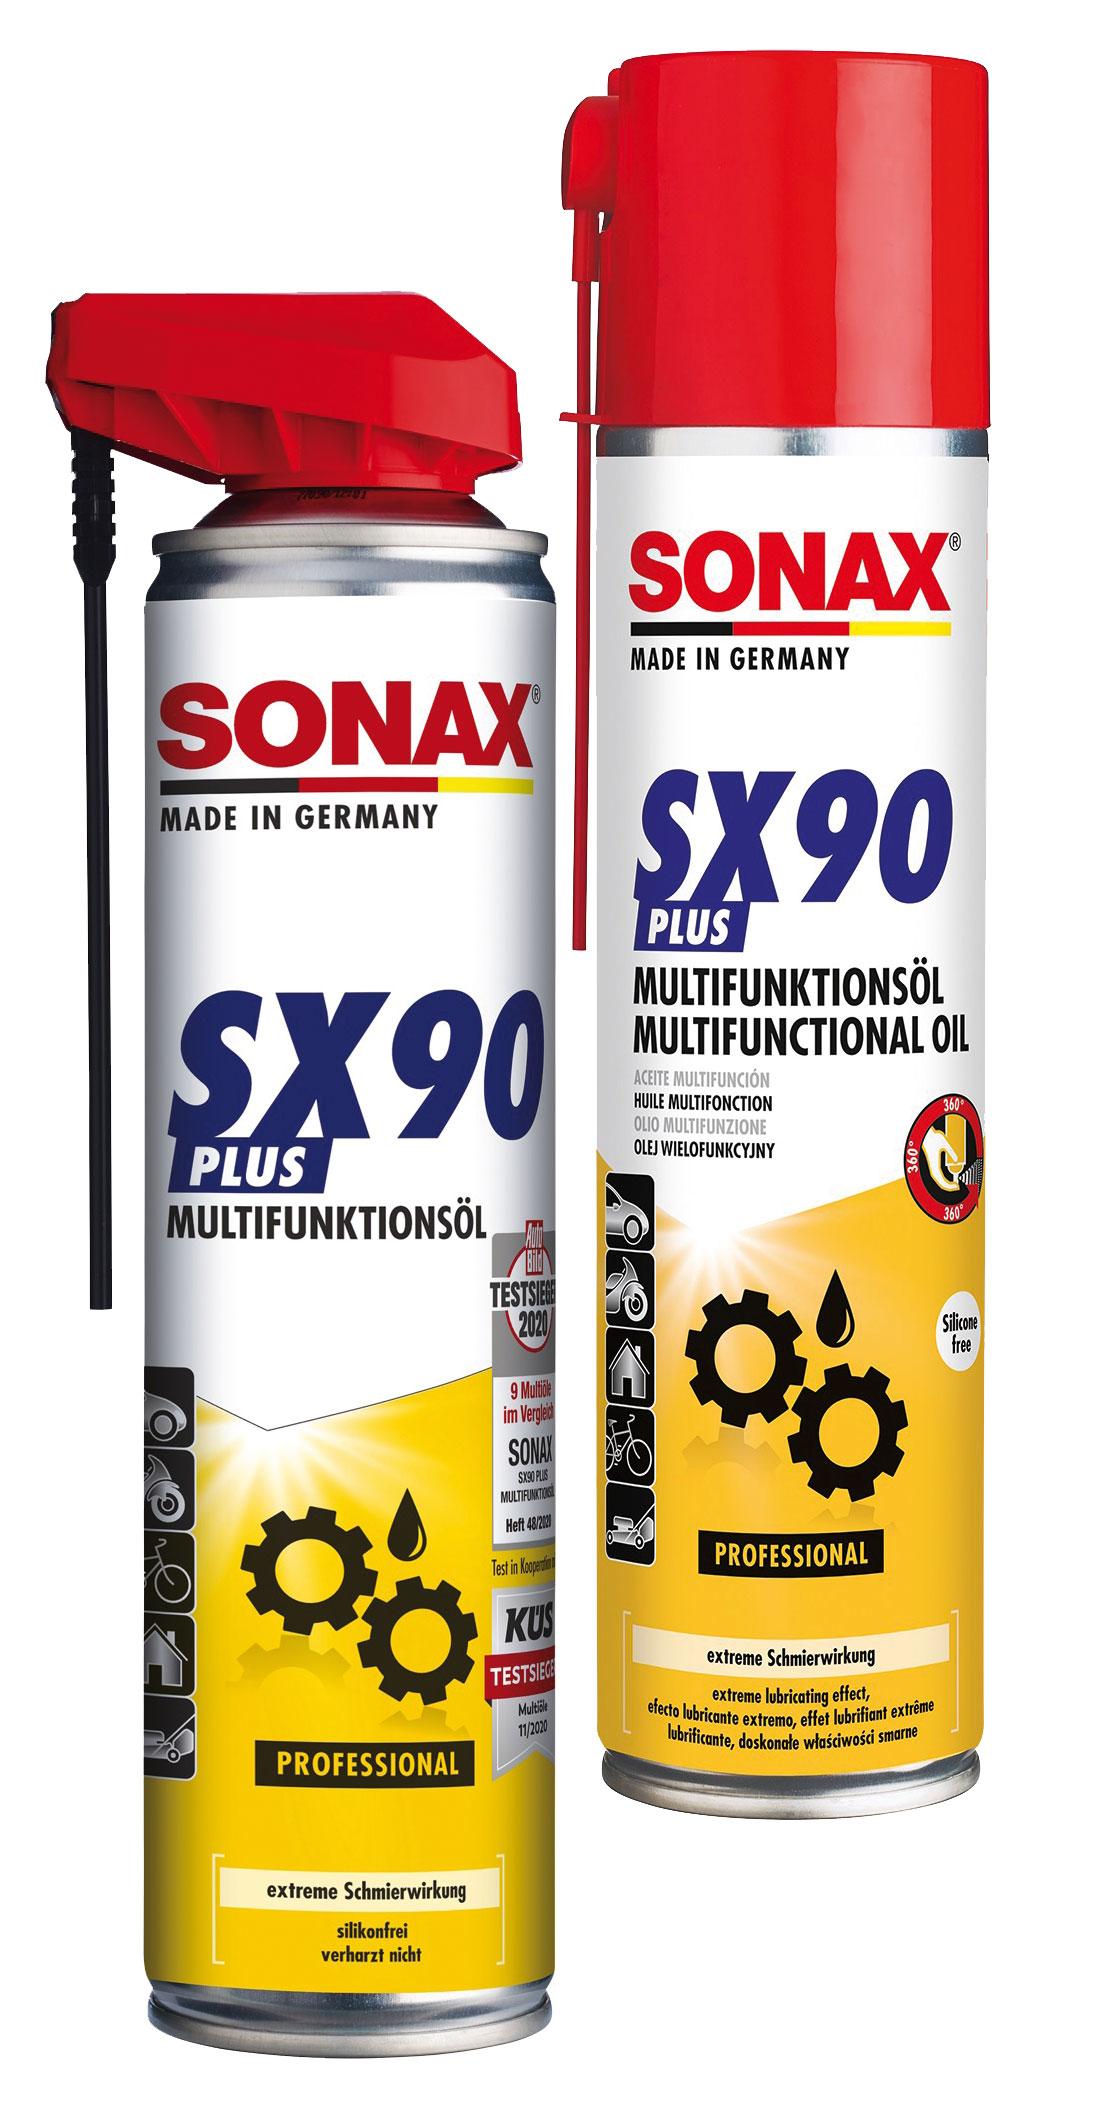 Sonax Multifunktionsöl SX90 Plus - Professional - verschiedene Gebinde